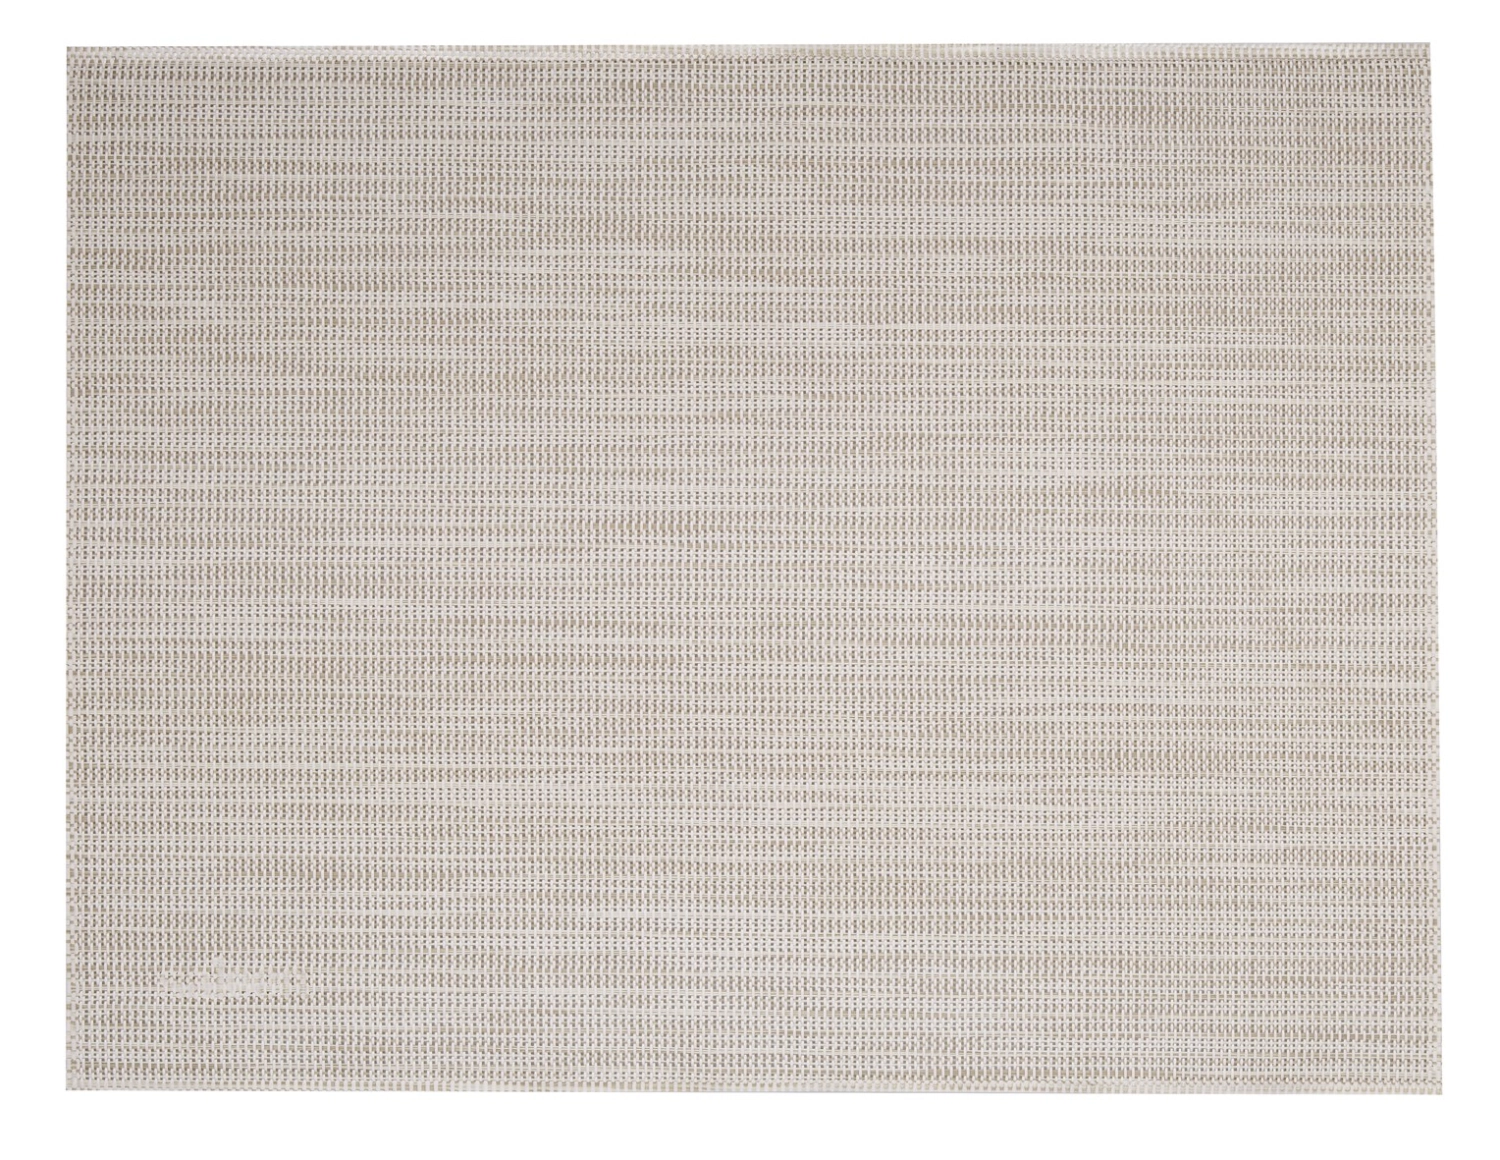 Set de table uni, carré, beige, blanc, 32x42cm